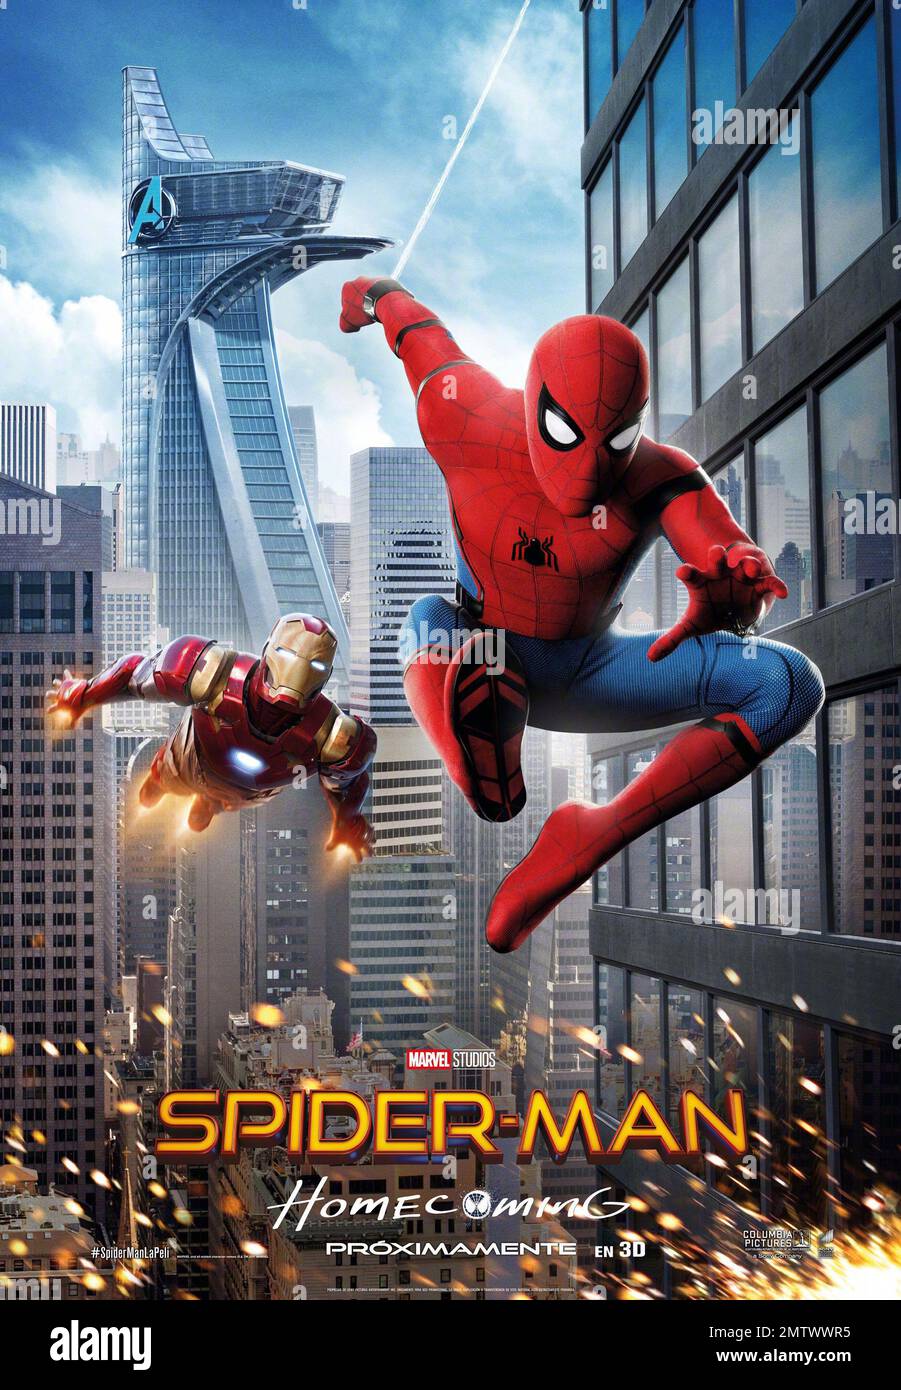 Spider-Man: Homecoming année : 2017 USA Directeur : Jon Watts affiche espagnole Banque D'Images